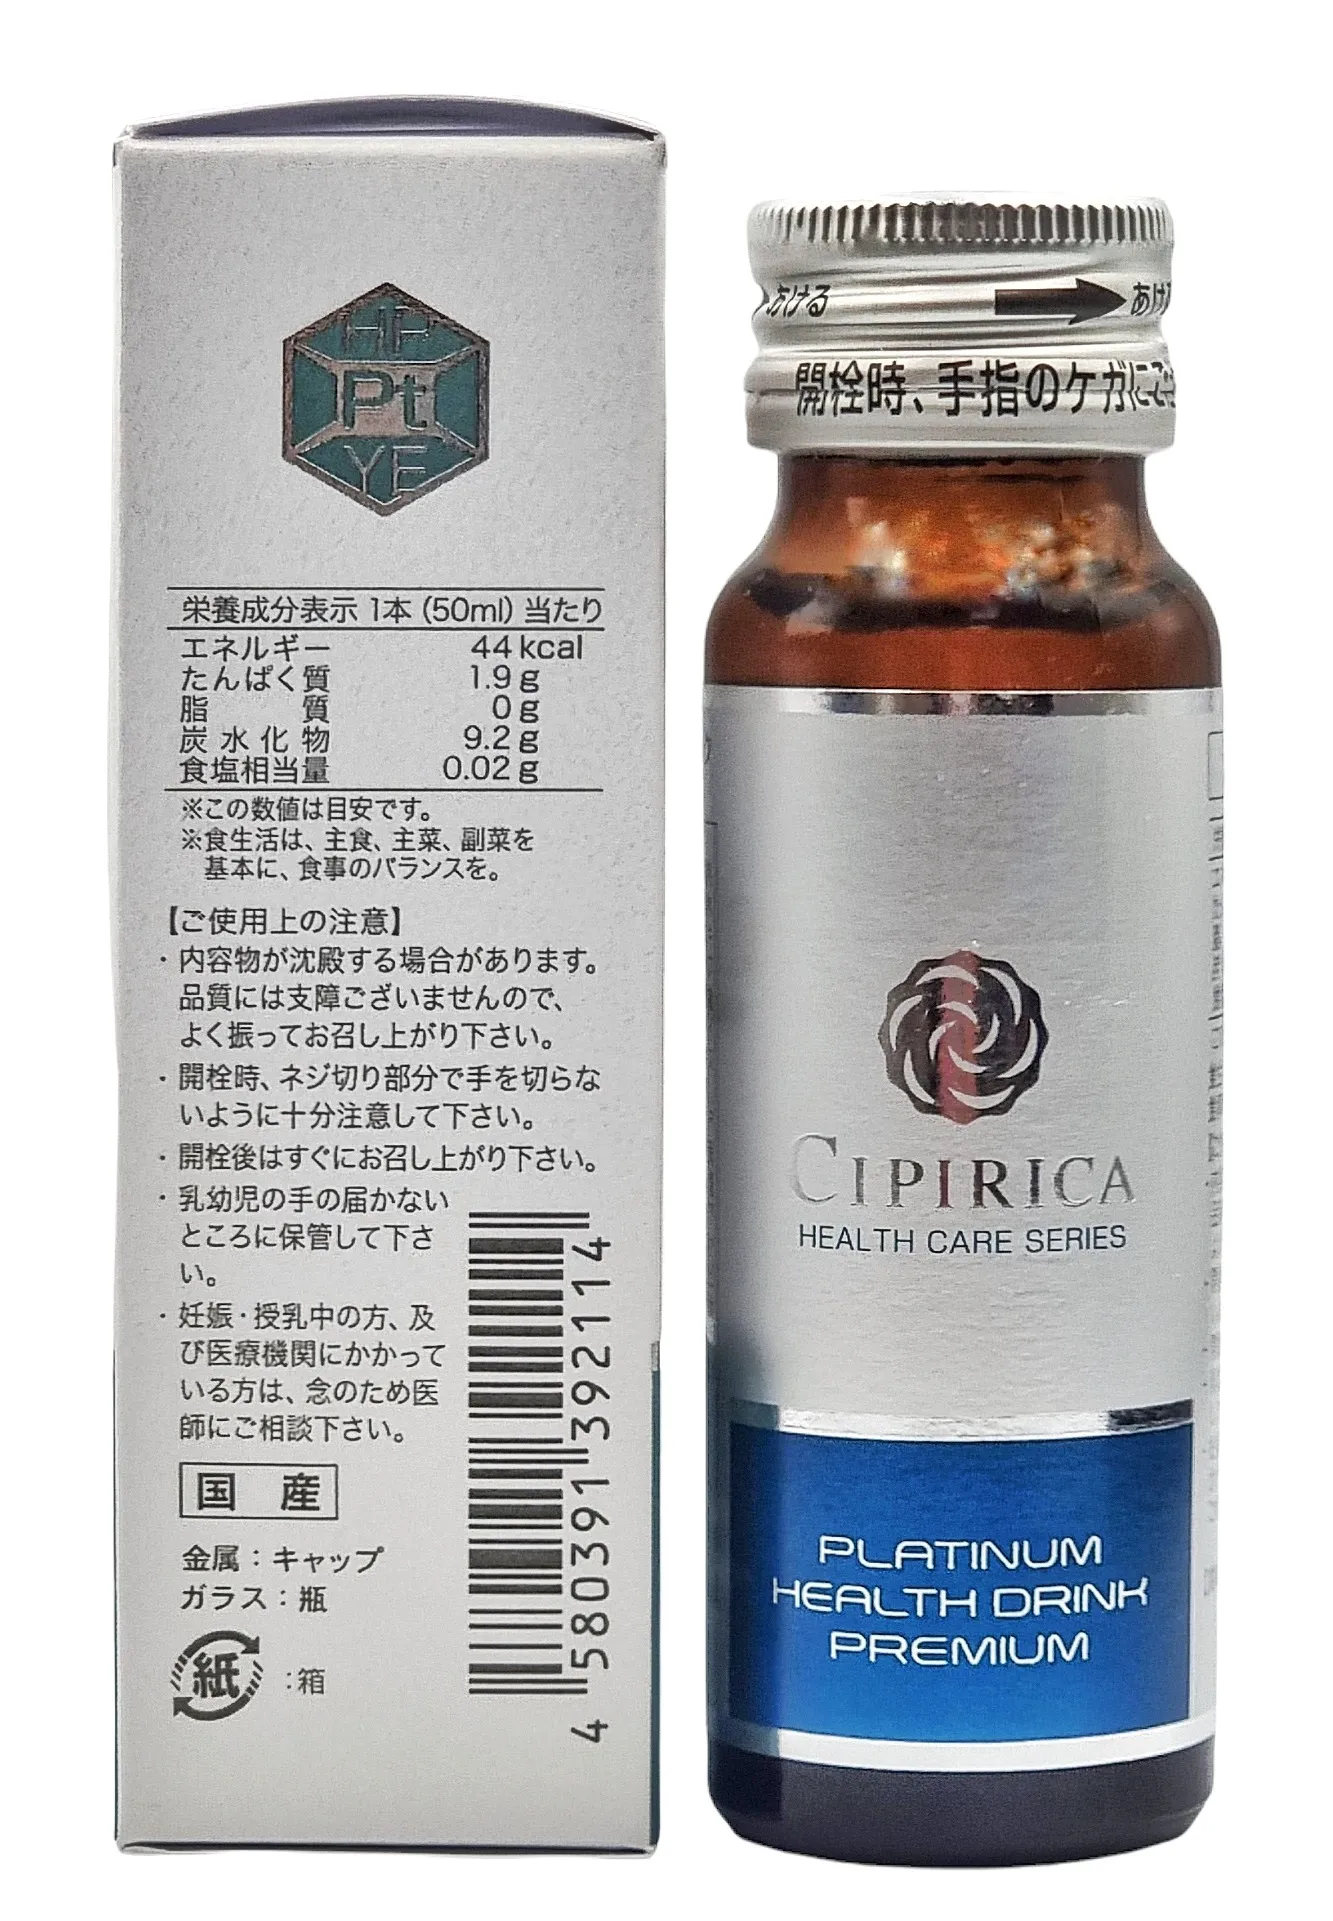 Плацентарный напиток для энергии и молодости организма Platinum Health Drink Premium Cipirica